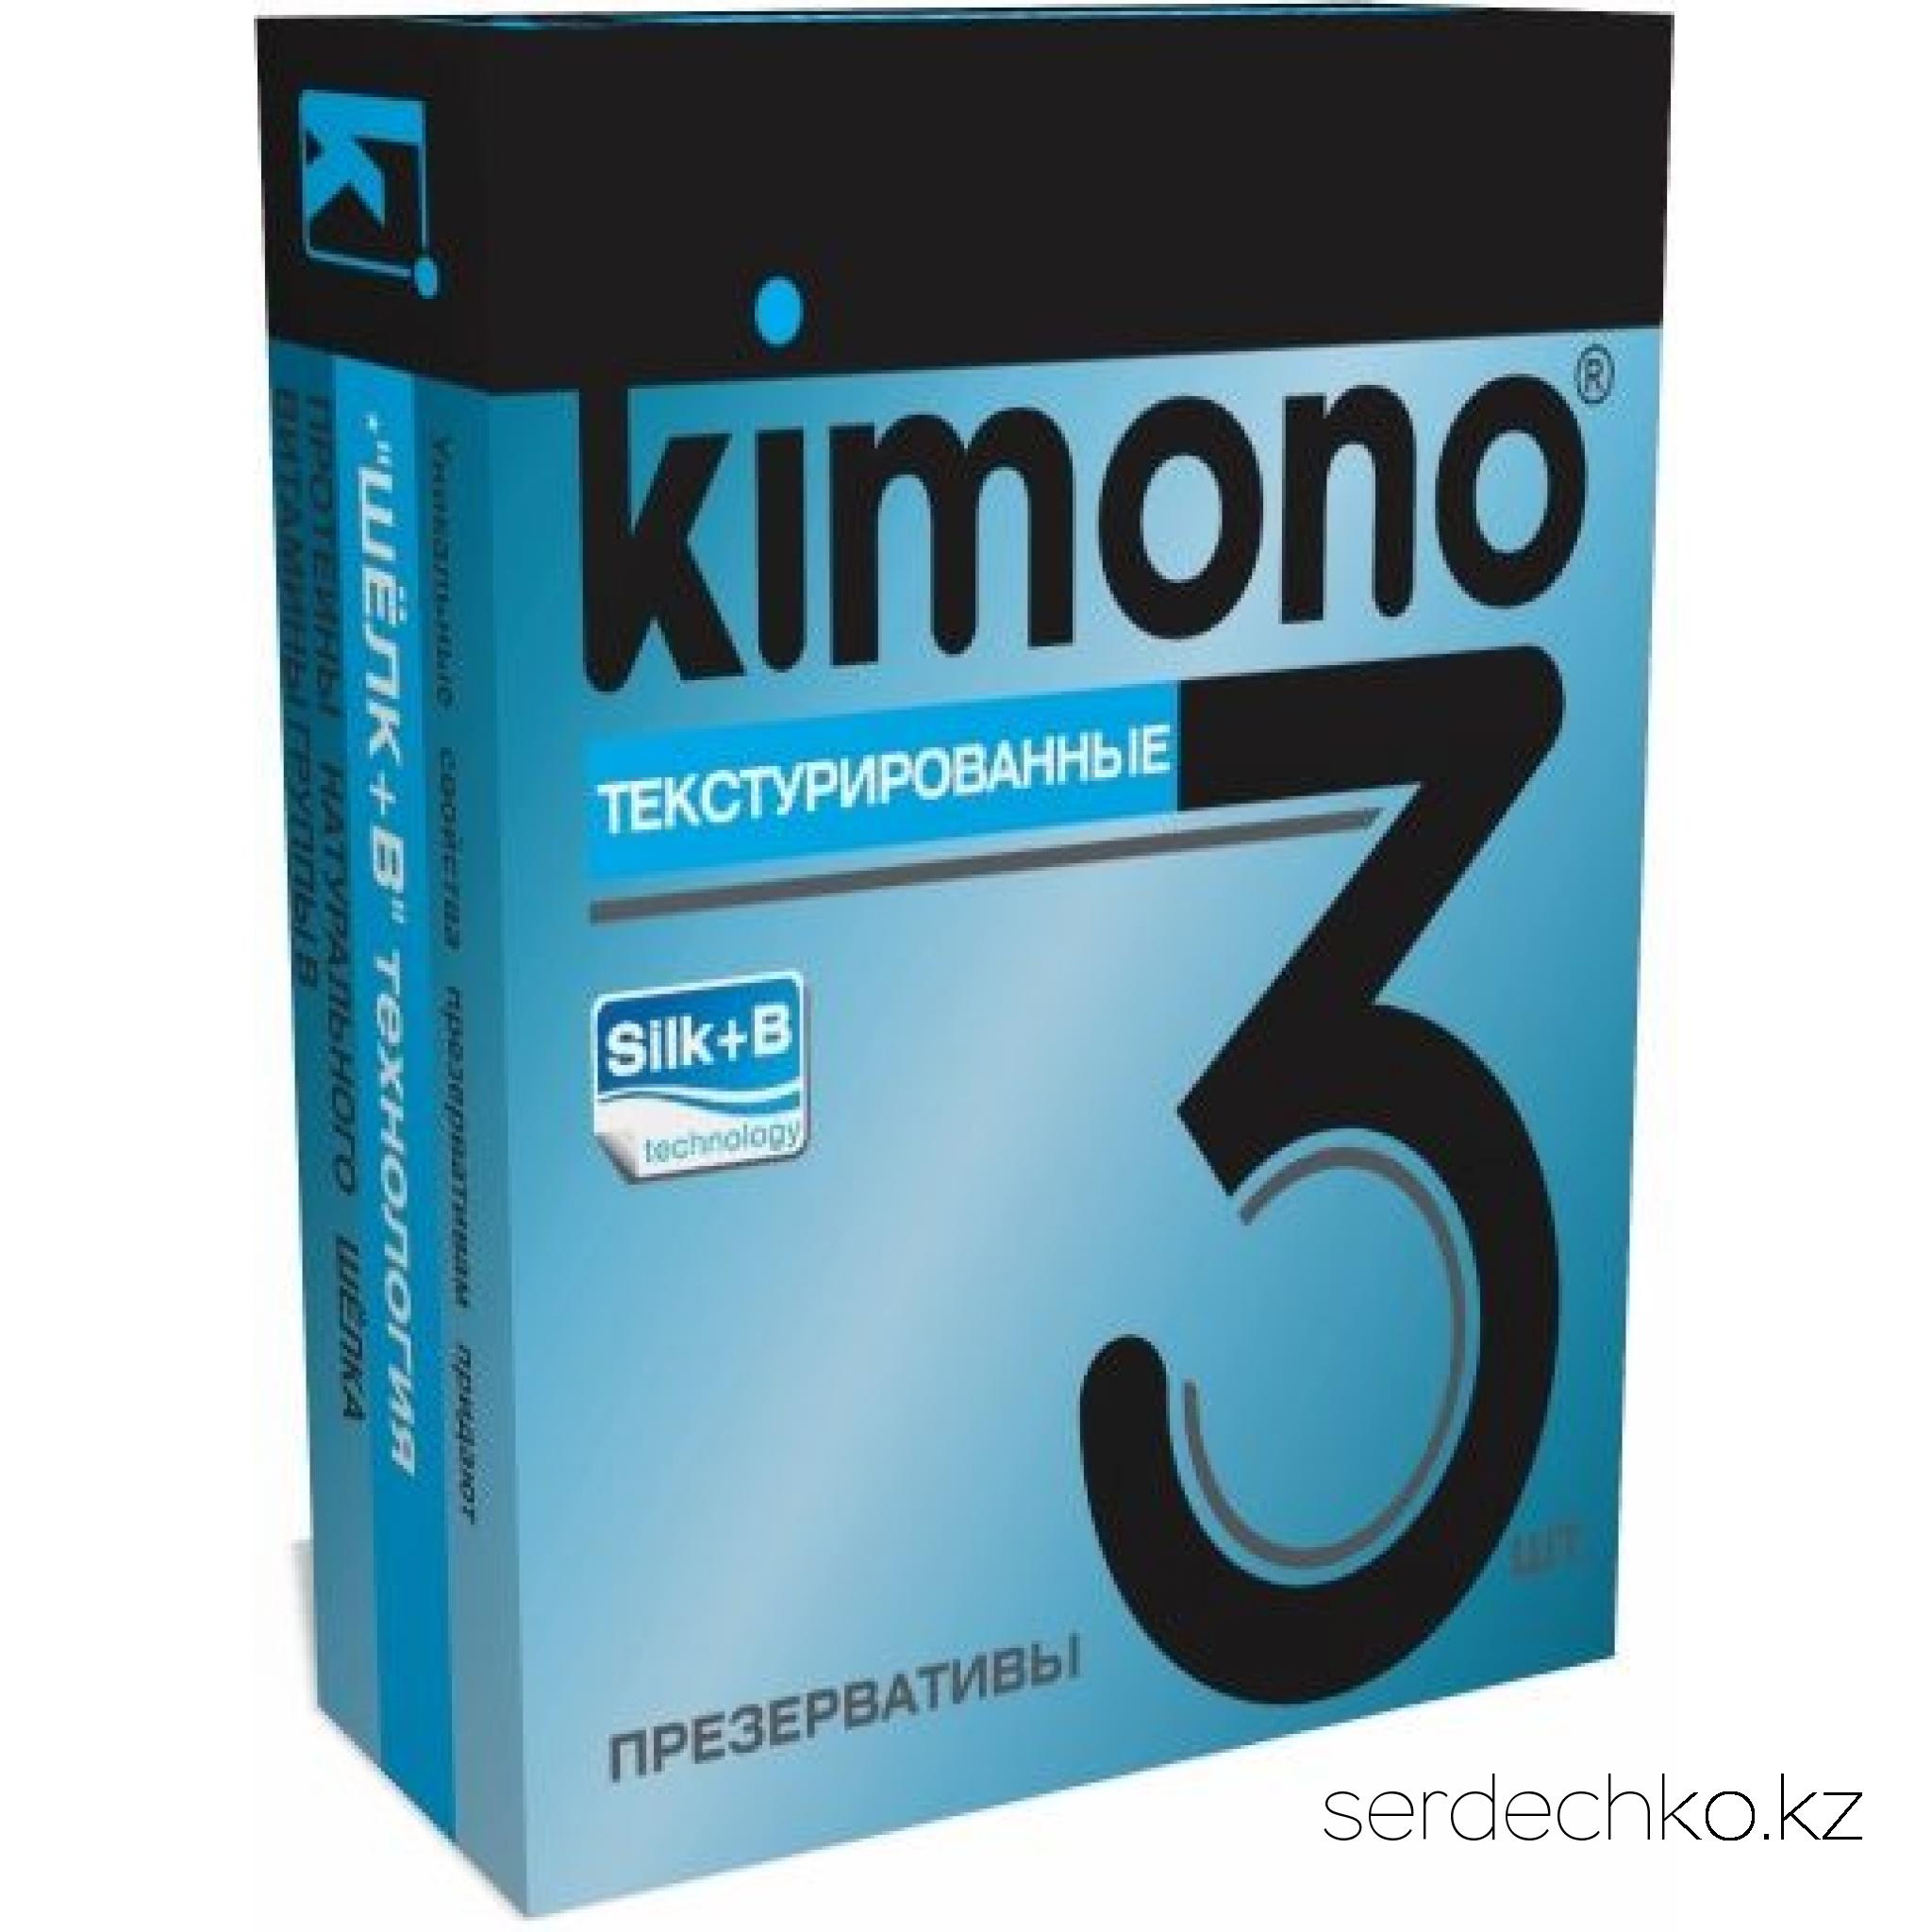 ПРЕЗЕРВАТИВЫ KIMONO (текстуированные) 3 шт, 
	Презерватив – защитное средство от множества патогенных микробов и наиболее эффективный контрацептив, который должен быть всегда под рукой! Ведь никогда не знаешь, где он может пригодиться – на свидании, в ночном клубе, в гостях…
	Представляем вашему вниманию текстурированные презервативы KIMONO, которые подарят множество незабываемых эмоций во время интимной близости. Они легко надеваются на половой орган мужчины или фаллоимитатор.
	Для комфортного использования совместно с презервативом рекомендуется применять любриканты на водной основе. Например, смазки из серий "О'Кей" или «Услада».
